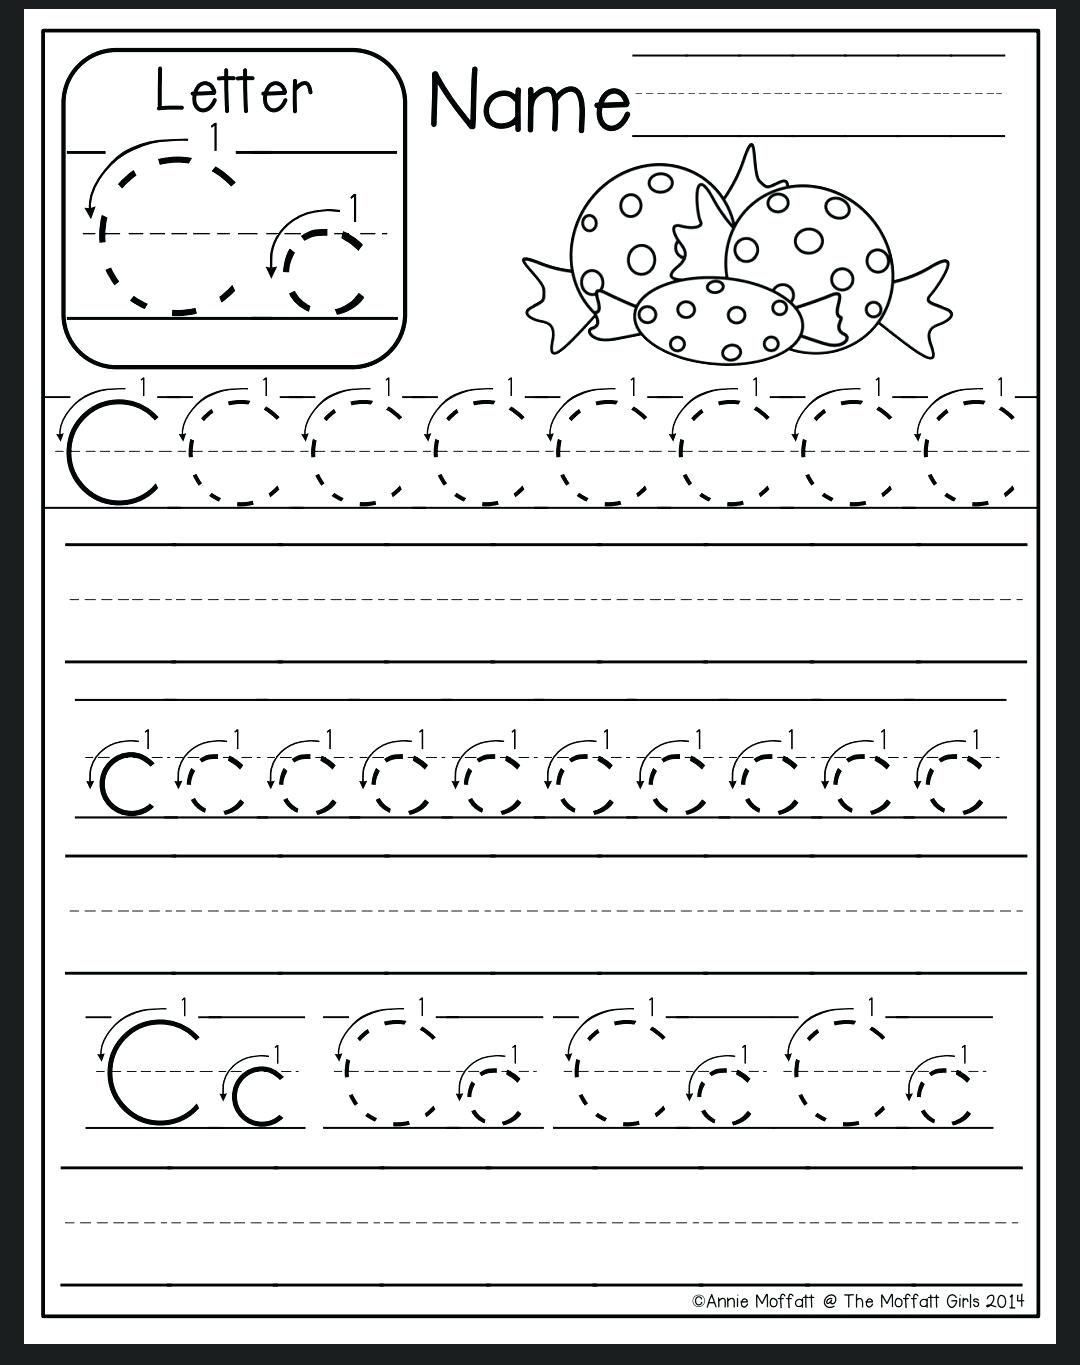 Letter C Tracing Sheet Letter C Worksheet Preschool Letter B within Trace Letter C Worksheets Preschool